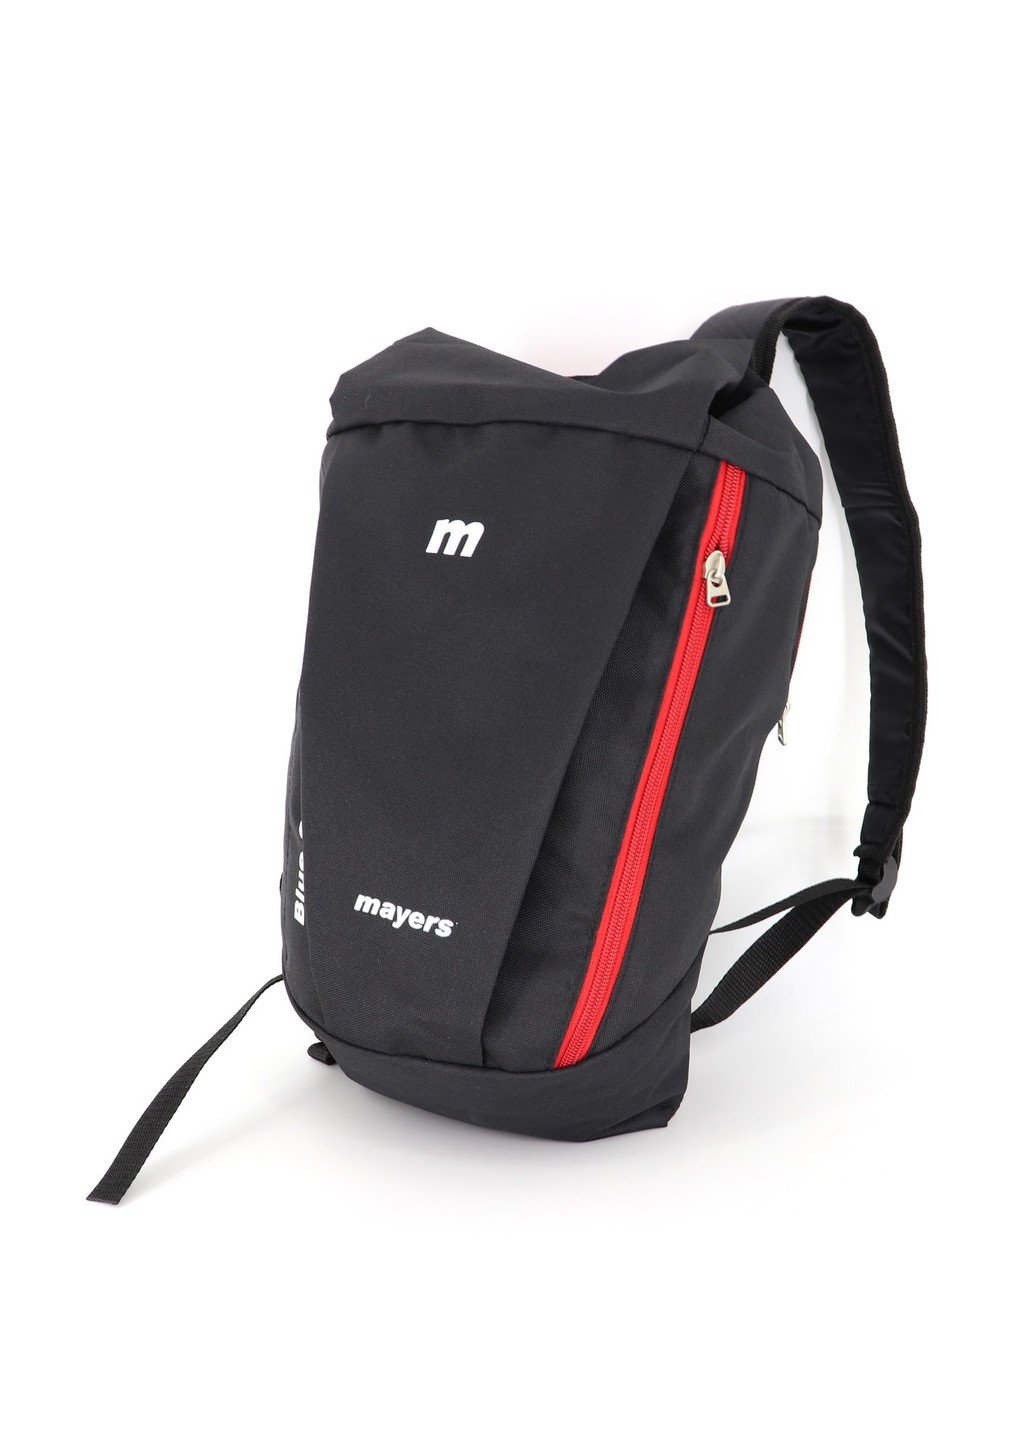 Черный детский спортивный рюкзак Mayers с красной молнией унисекс для школы тренировок и прогулок 10 литров No Brand (258591323)